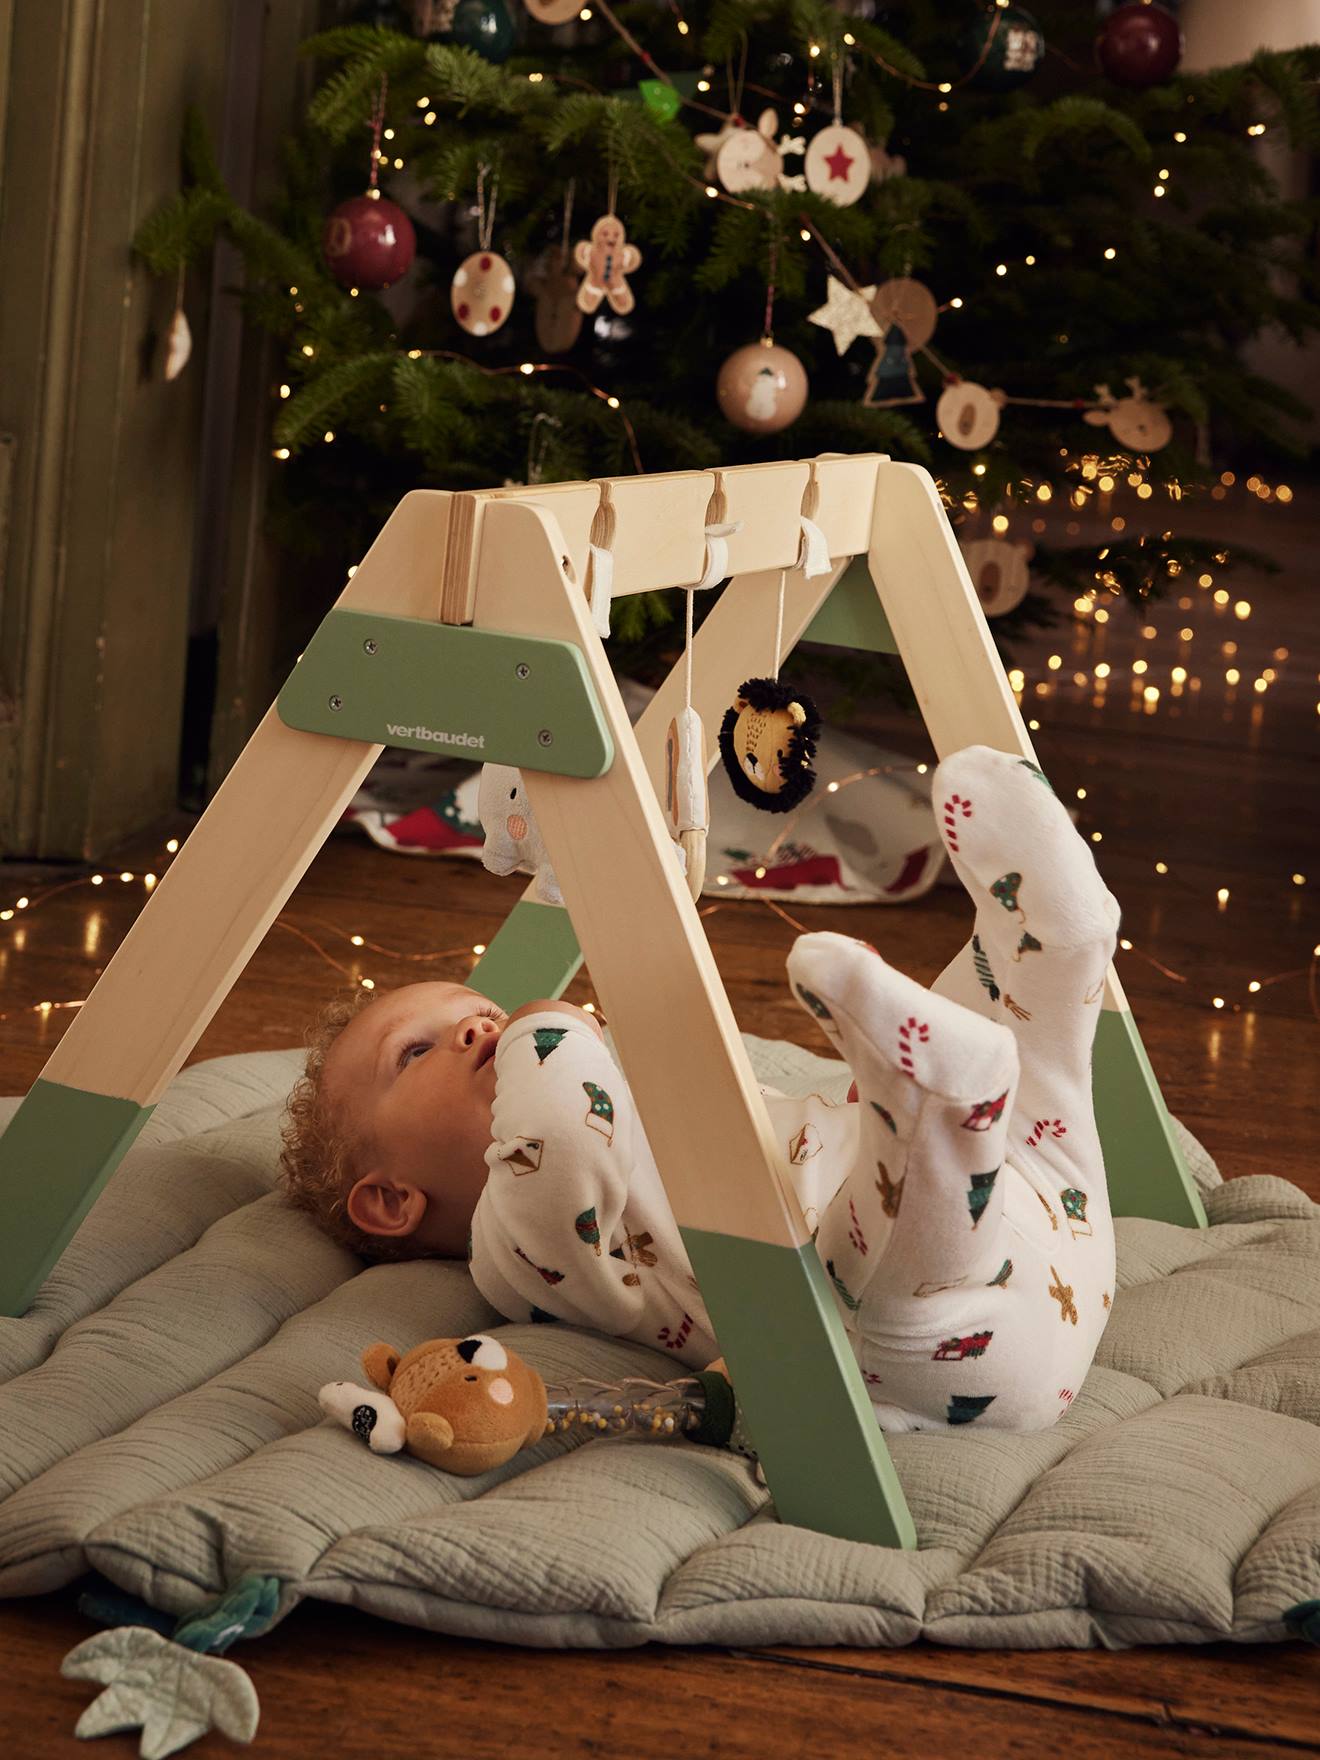 Portique d'éveil Musina - Selecta 61063 - Portique d'activités en bois pour  bébé